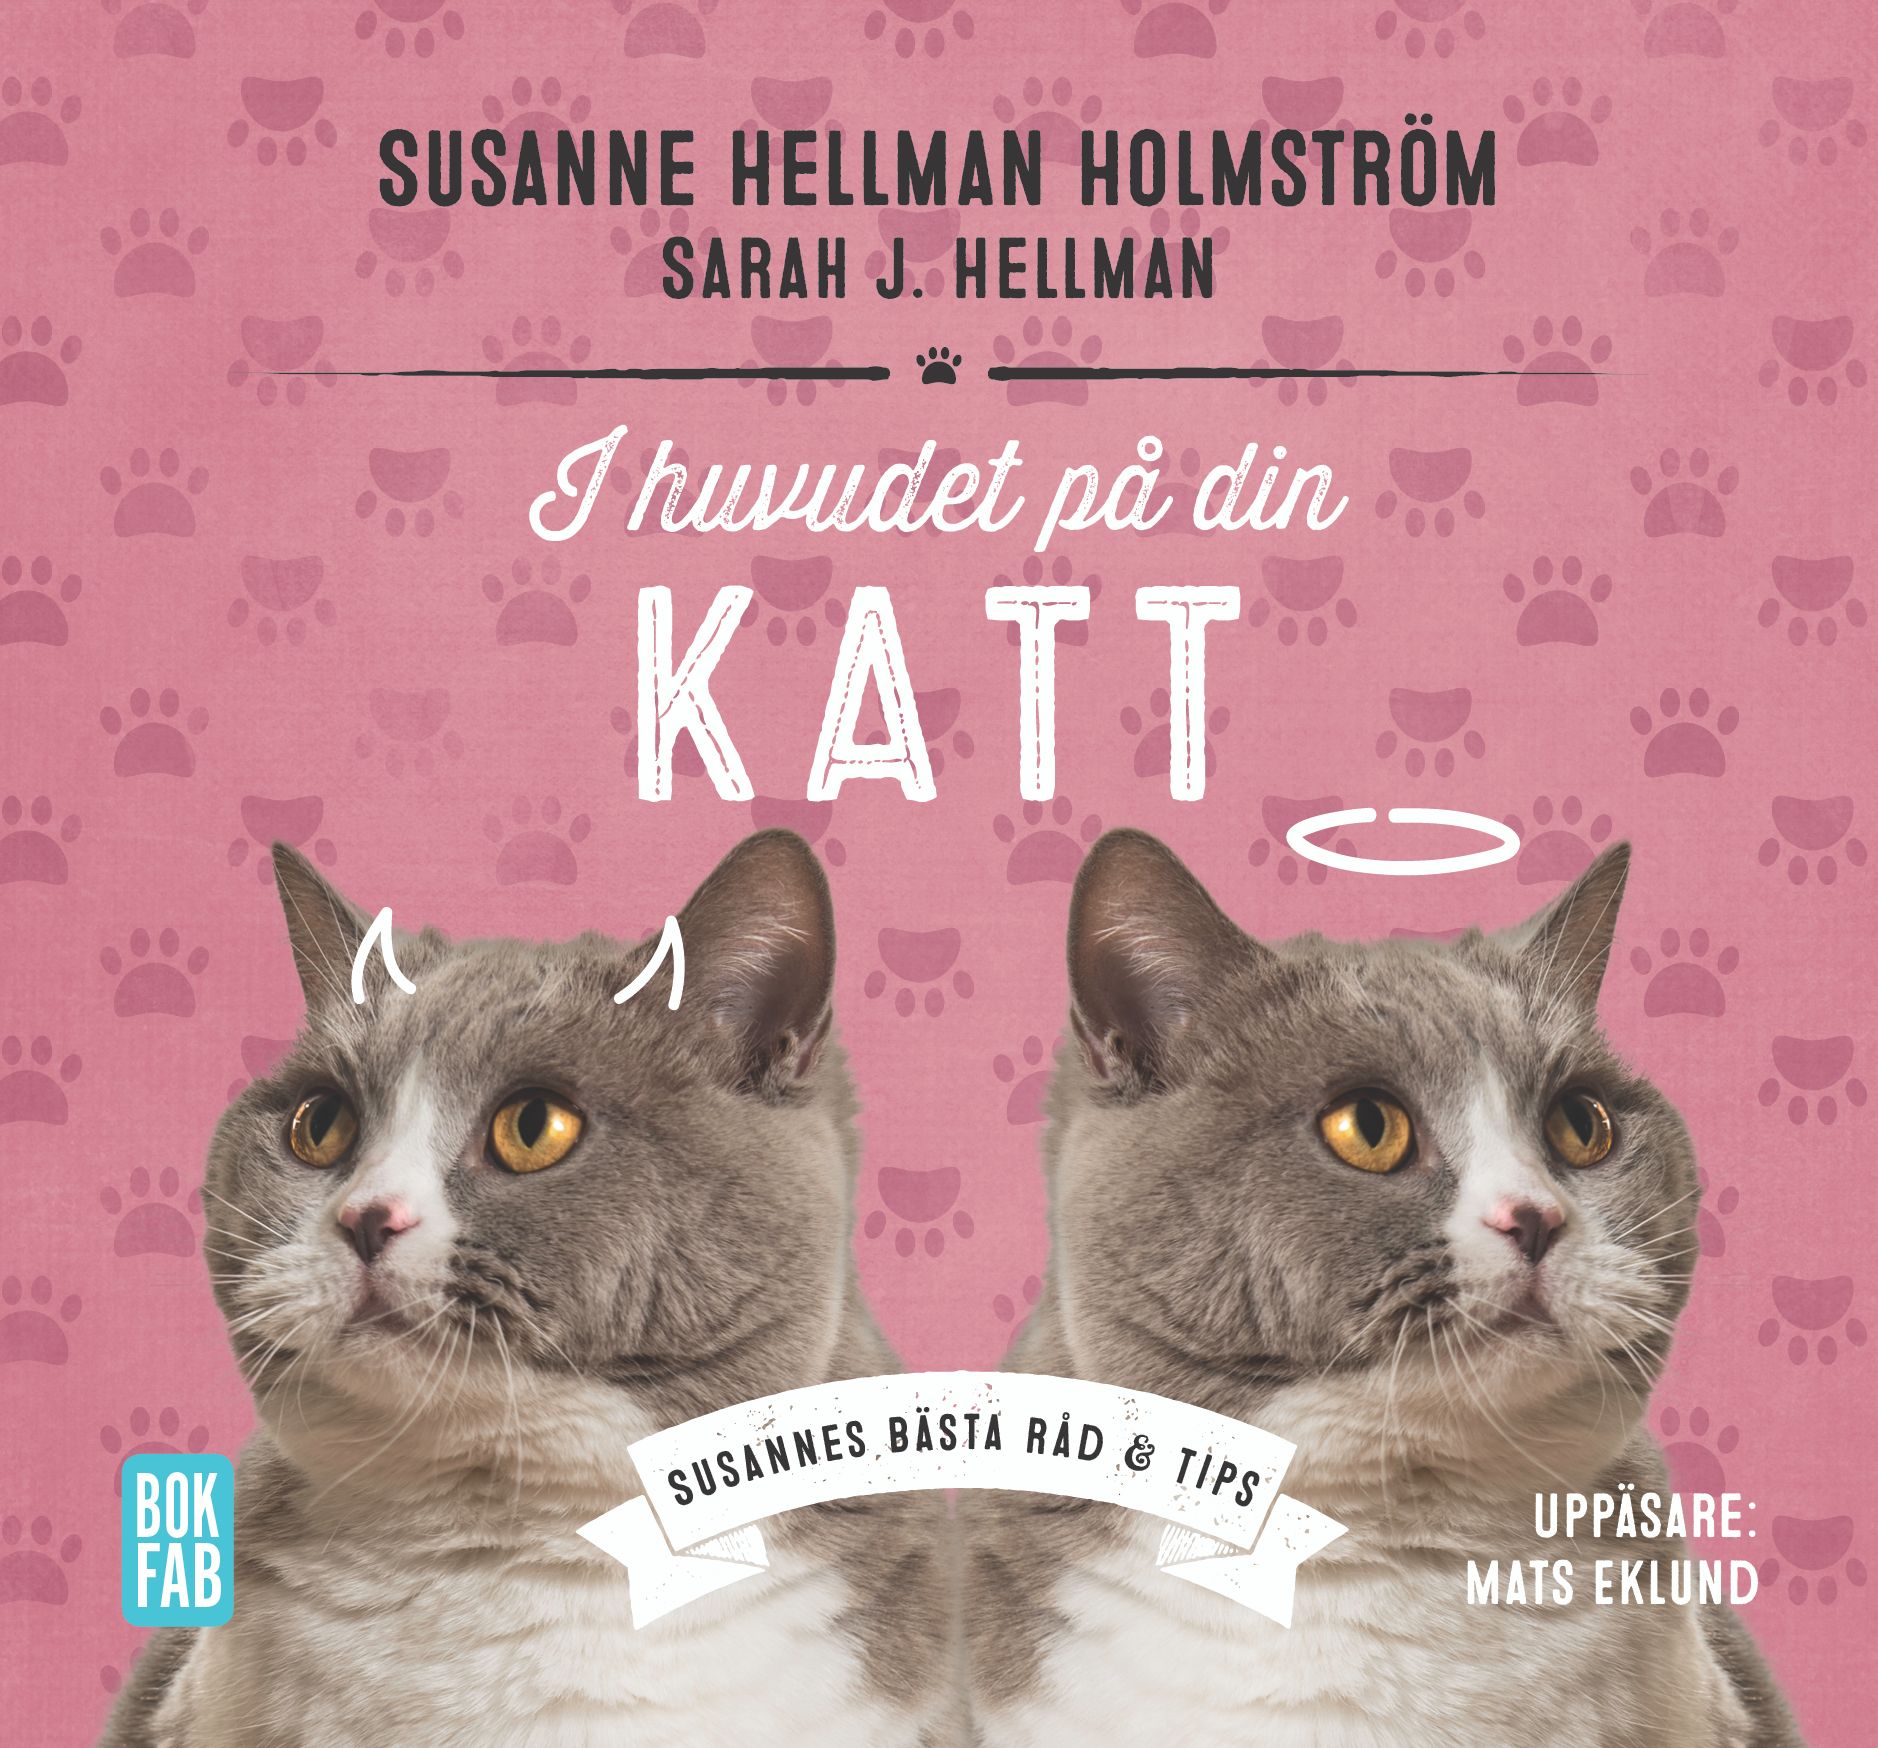 I huvudet på din katt, audiobook by Sarah J Hellman, Susanne Hellman Holmström